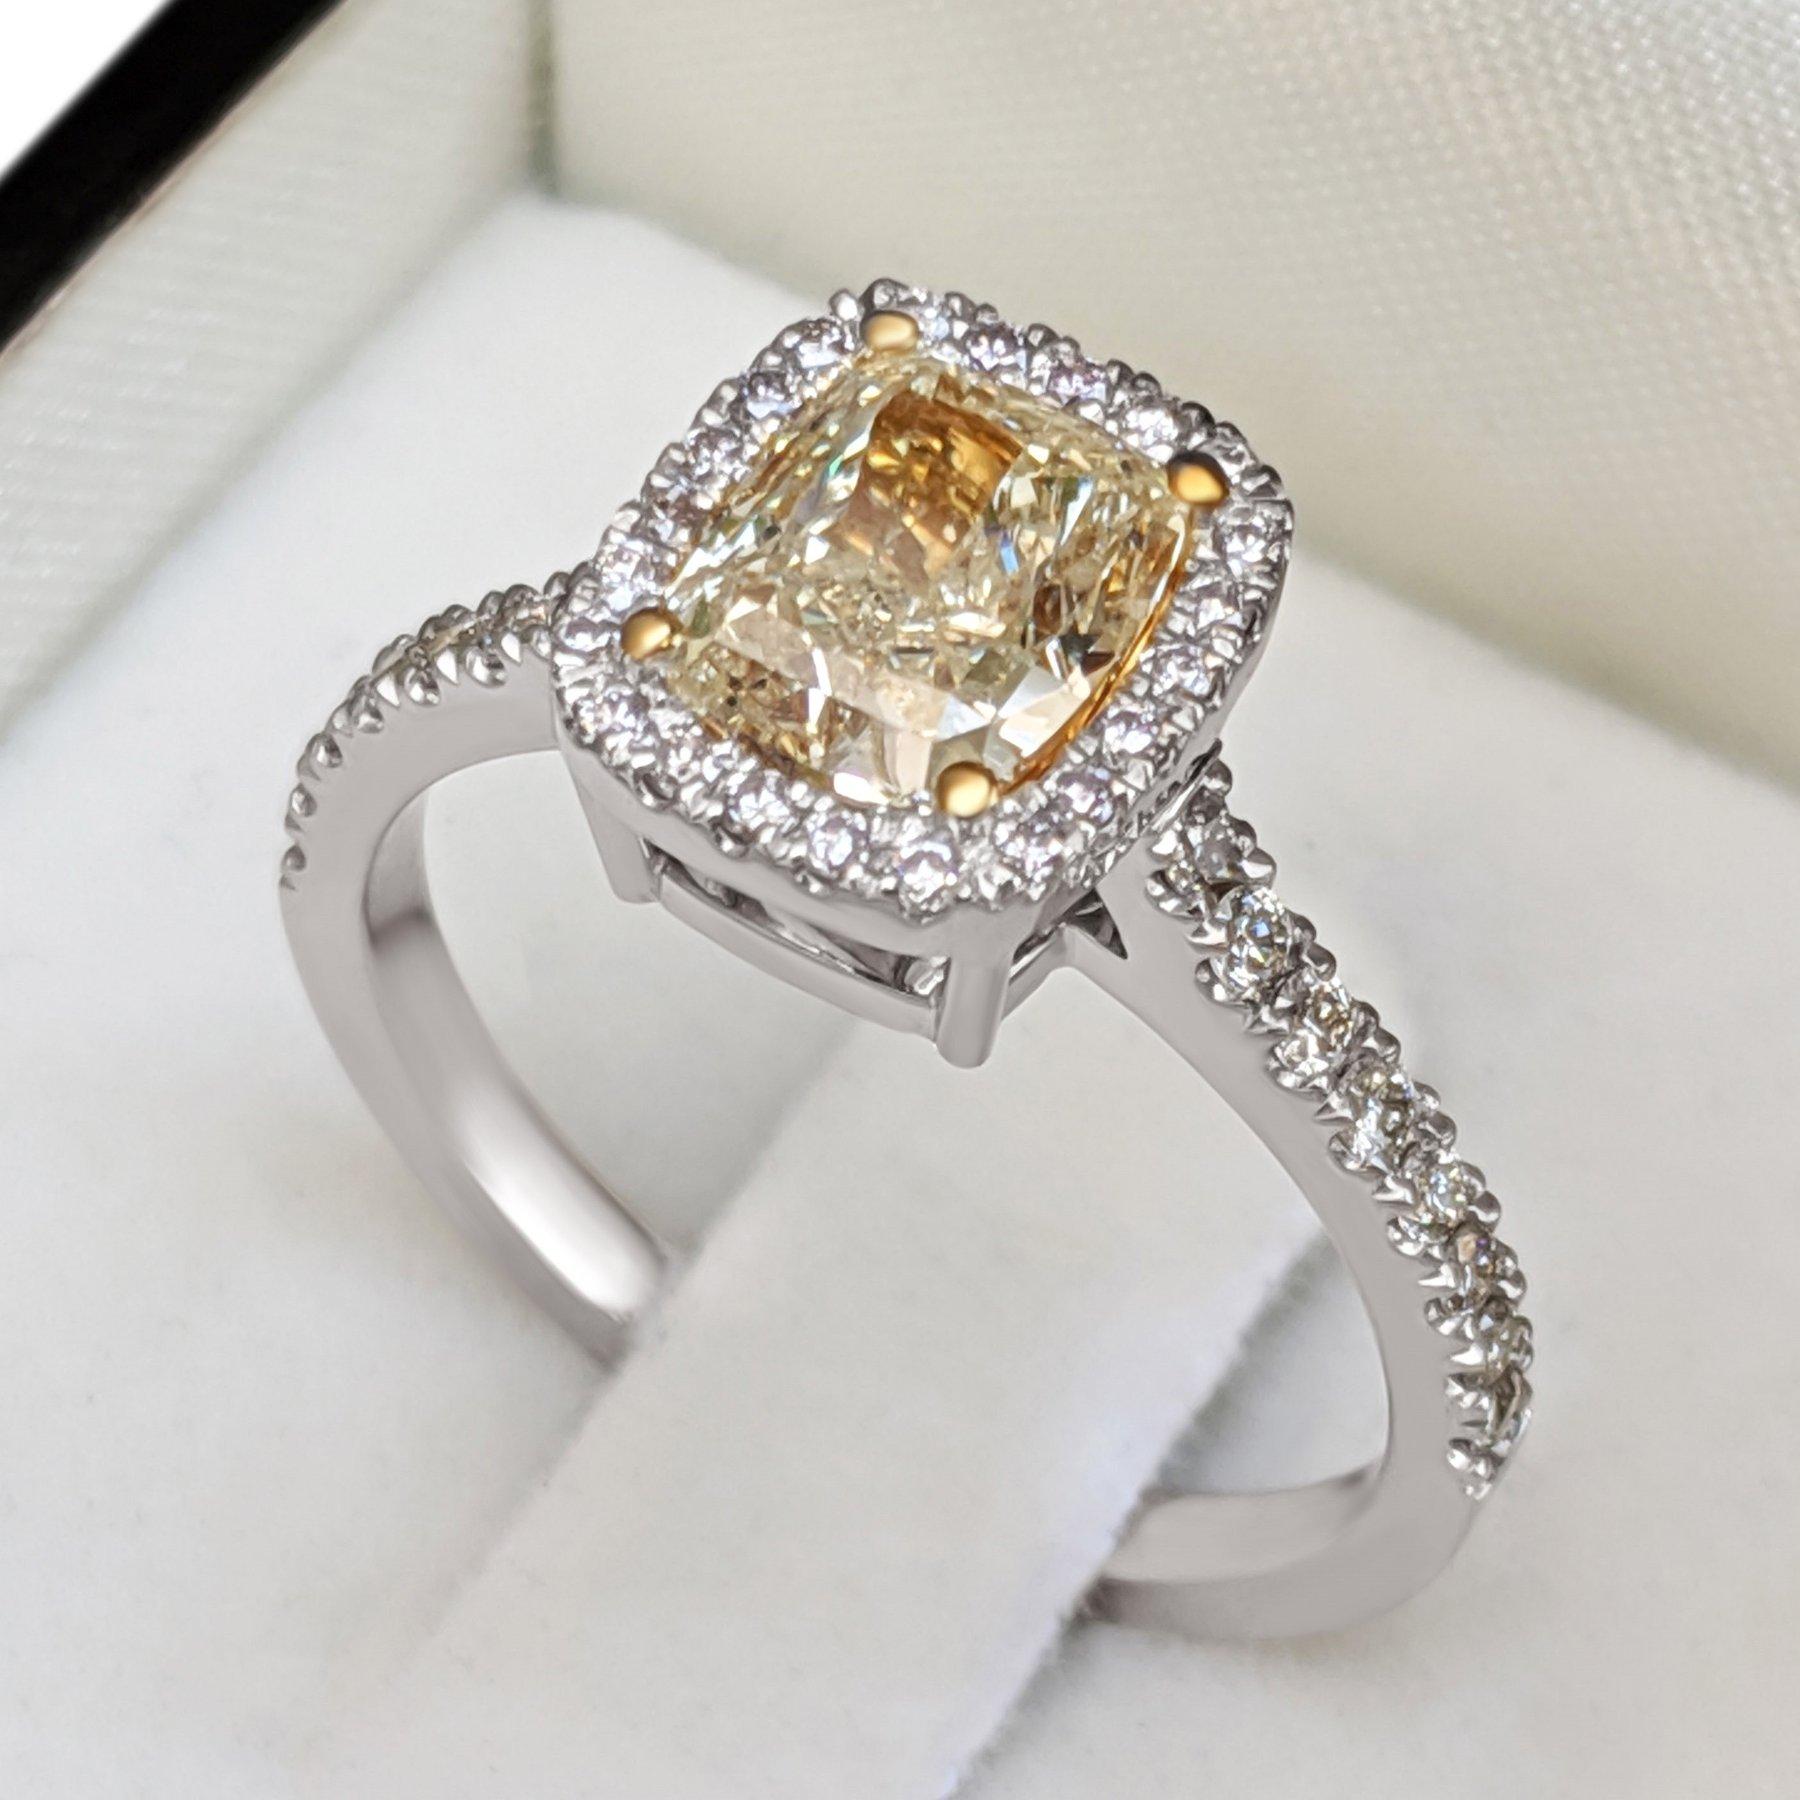 Nous vous proposons aujourd'hui cette magnifique bague ornée d'un diamant jaune fantaisie de 1,53 carat au centre et d'un halo de diamants de 0,46 cttw.
La bague peut être redimensionnée gratuitement avant l'expédition.
Taille de la bague : ? ?